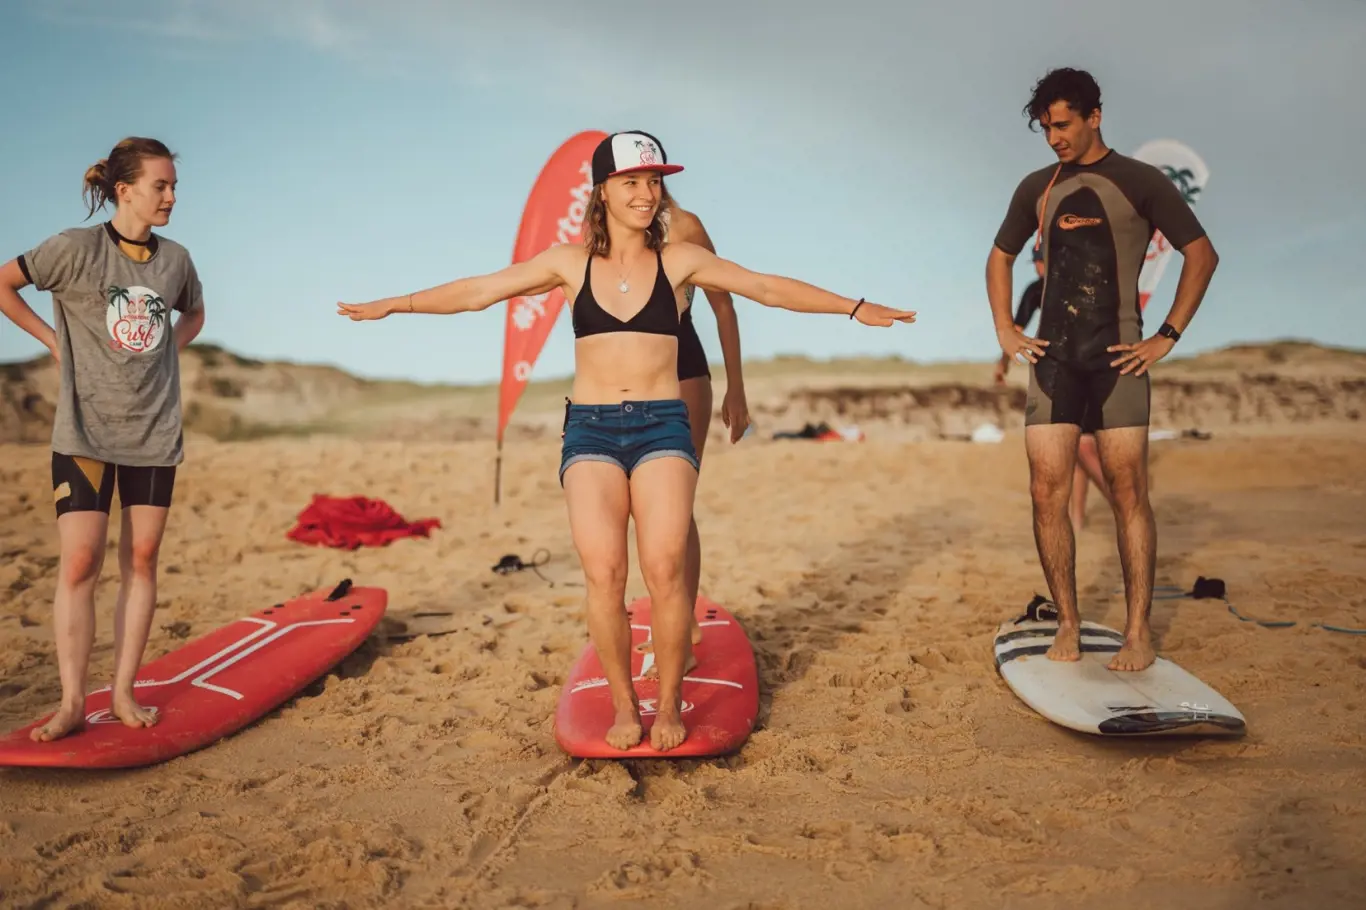 Vodafone pokračuje v projektu Je to v tobě, kde si mohou mladí lidé zkoušet různé profese a dovednosti - včetně surfování